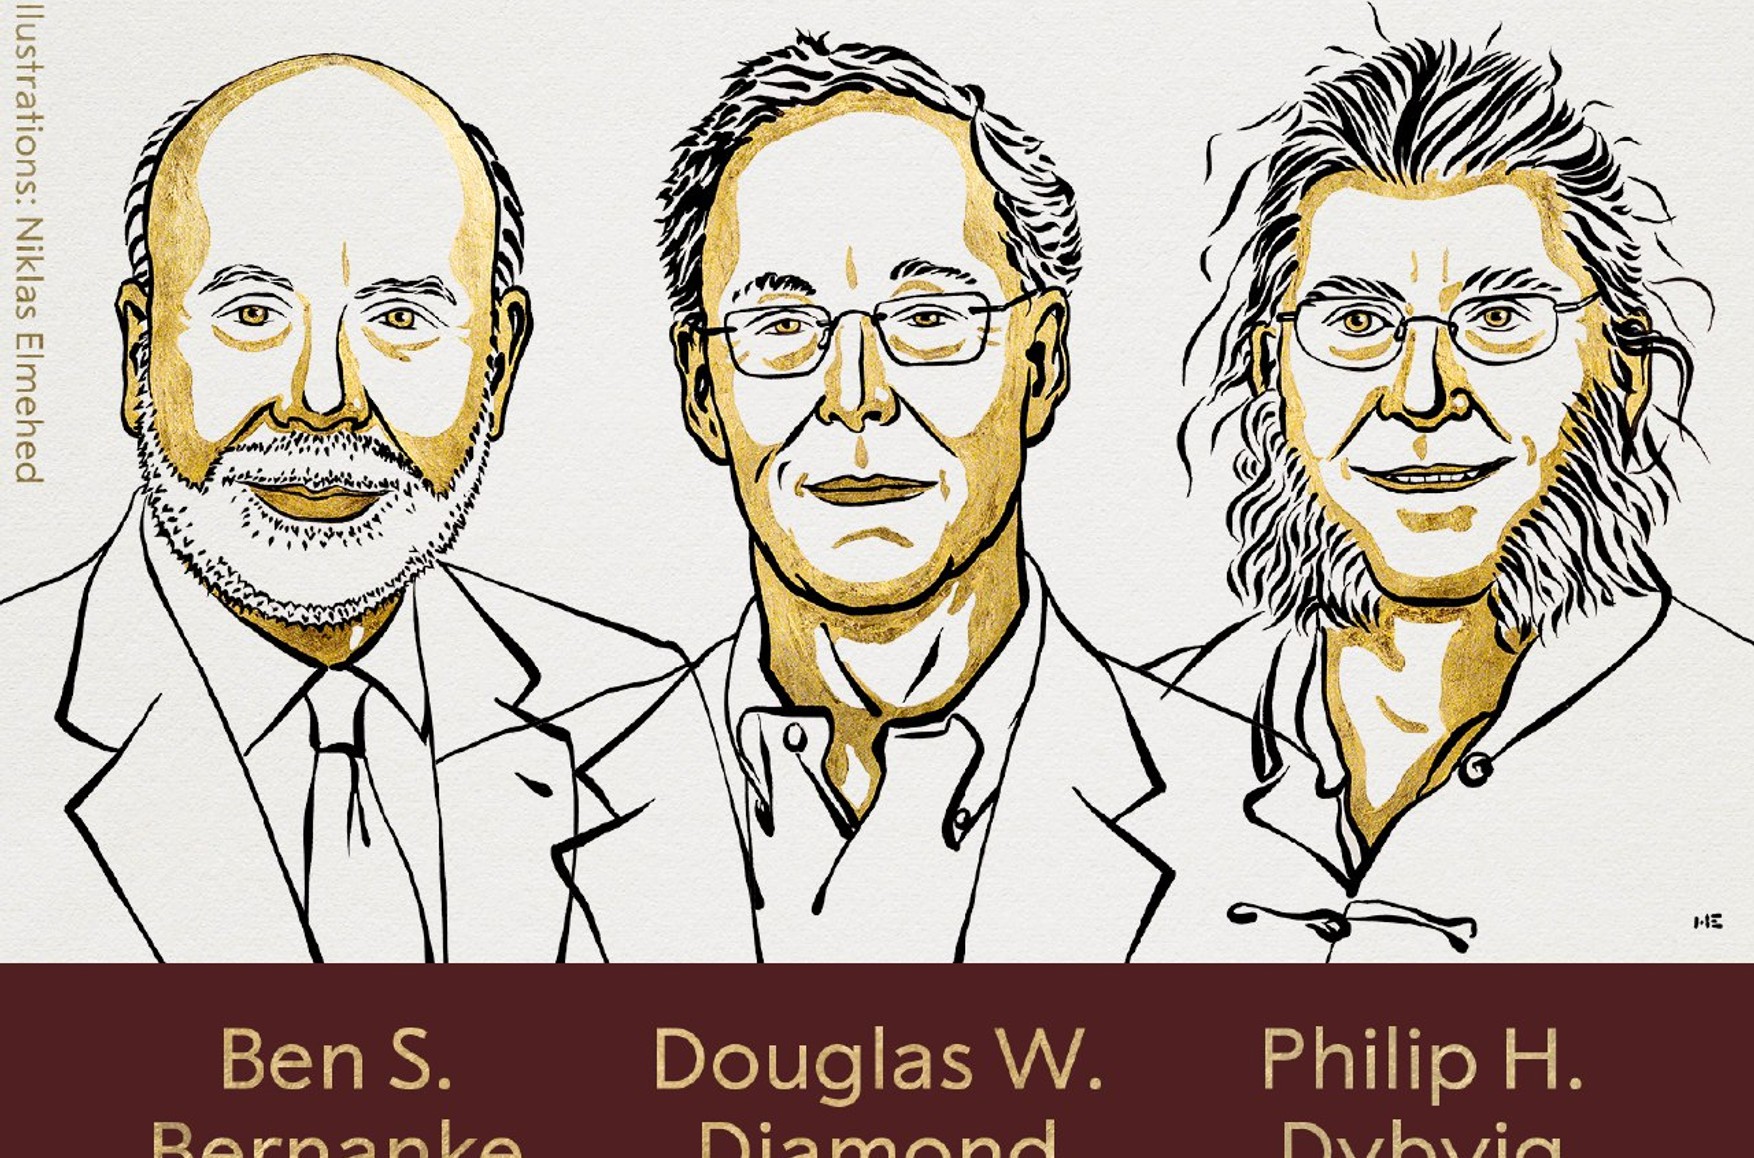 Нобелевская премия по экономике присуждена Бернанке, Даймонду и Дибвигу «за исследования банков и финансовых кризисов»